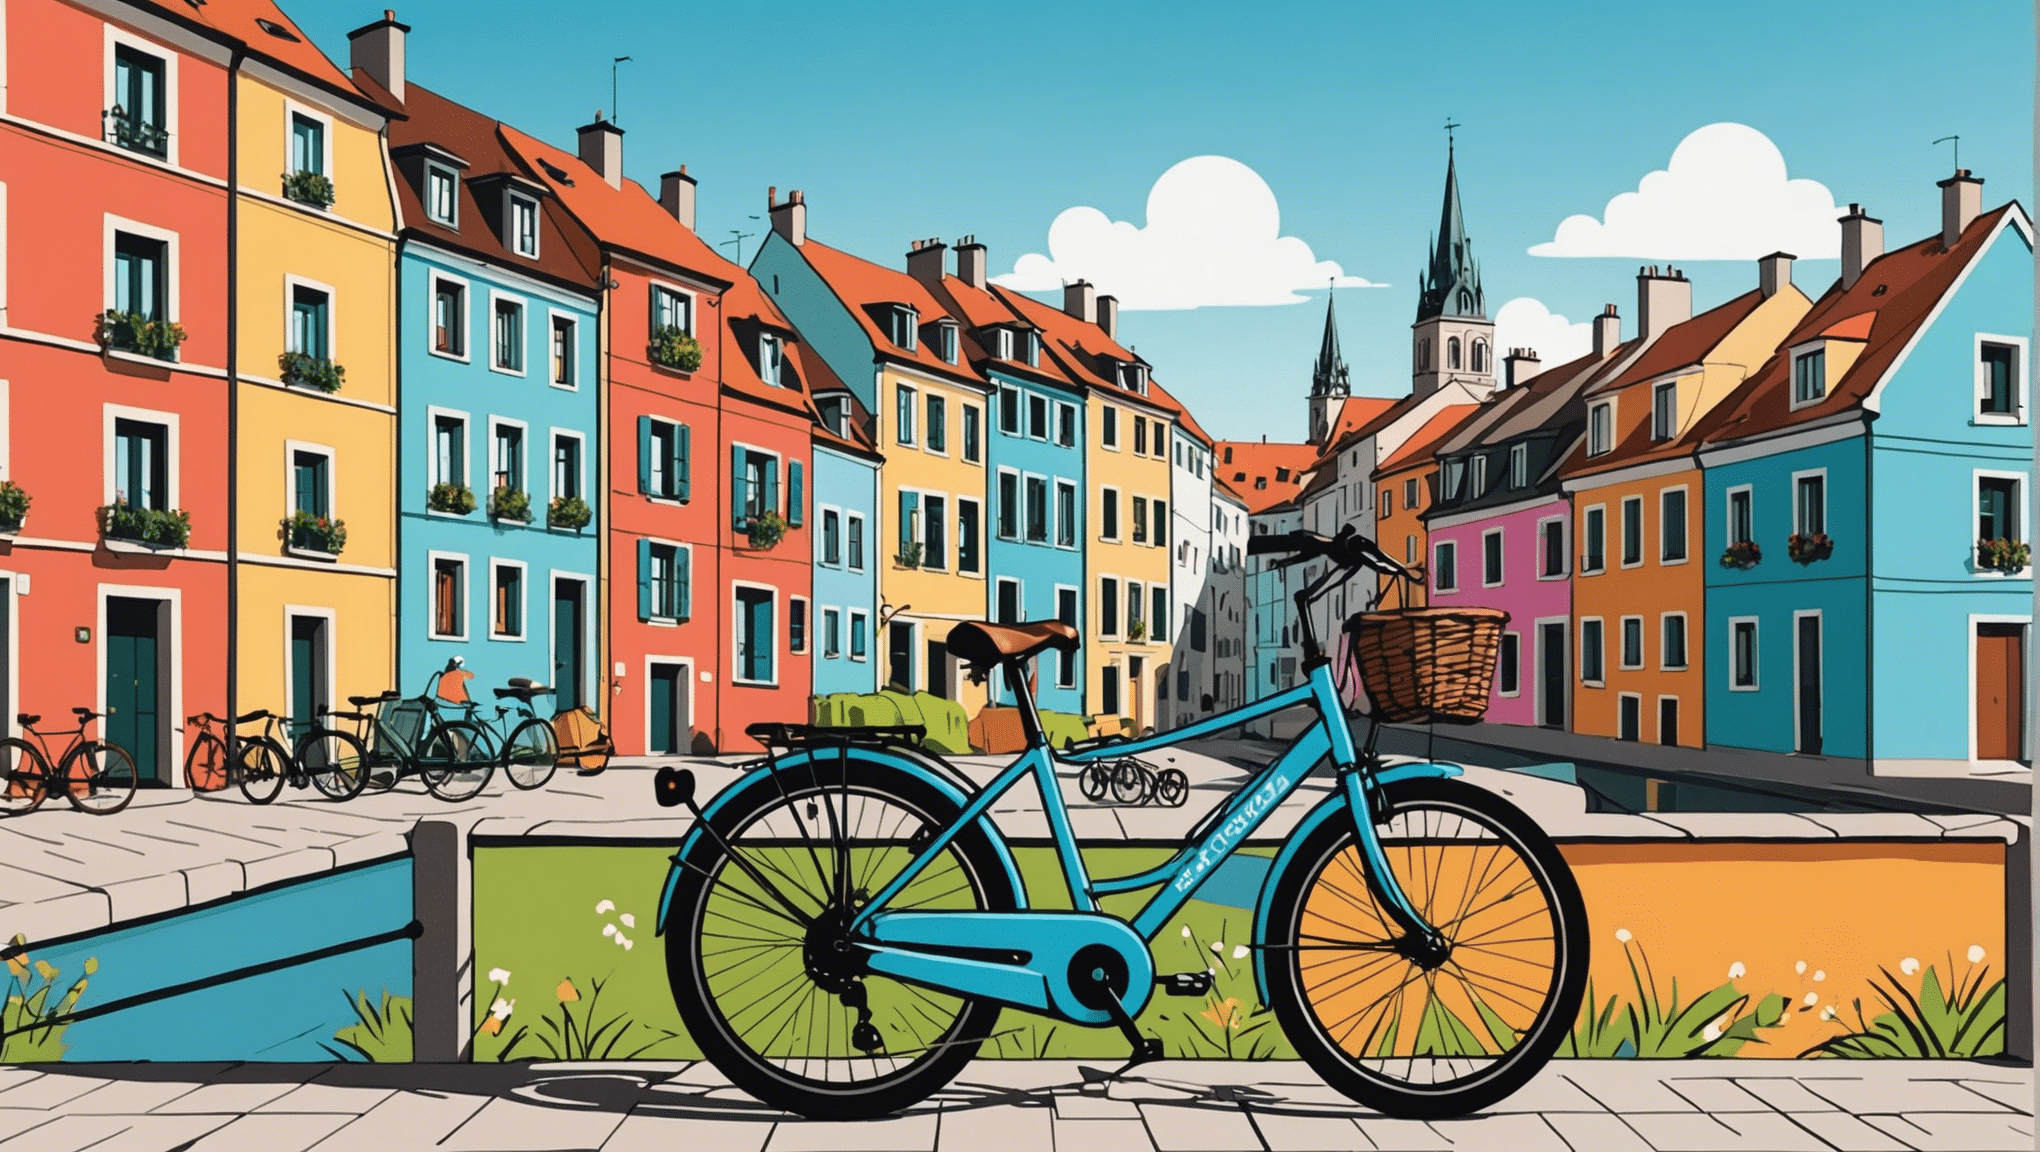 descubra os destinos imperdíveis para os entusiastas das viagens de bicicleta na europa com as nossas dicas para explorar o continente sobre duas rodas.